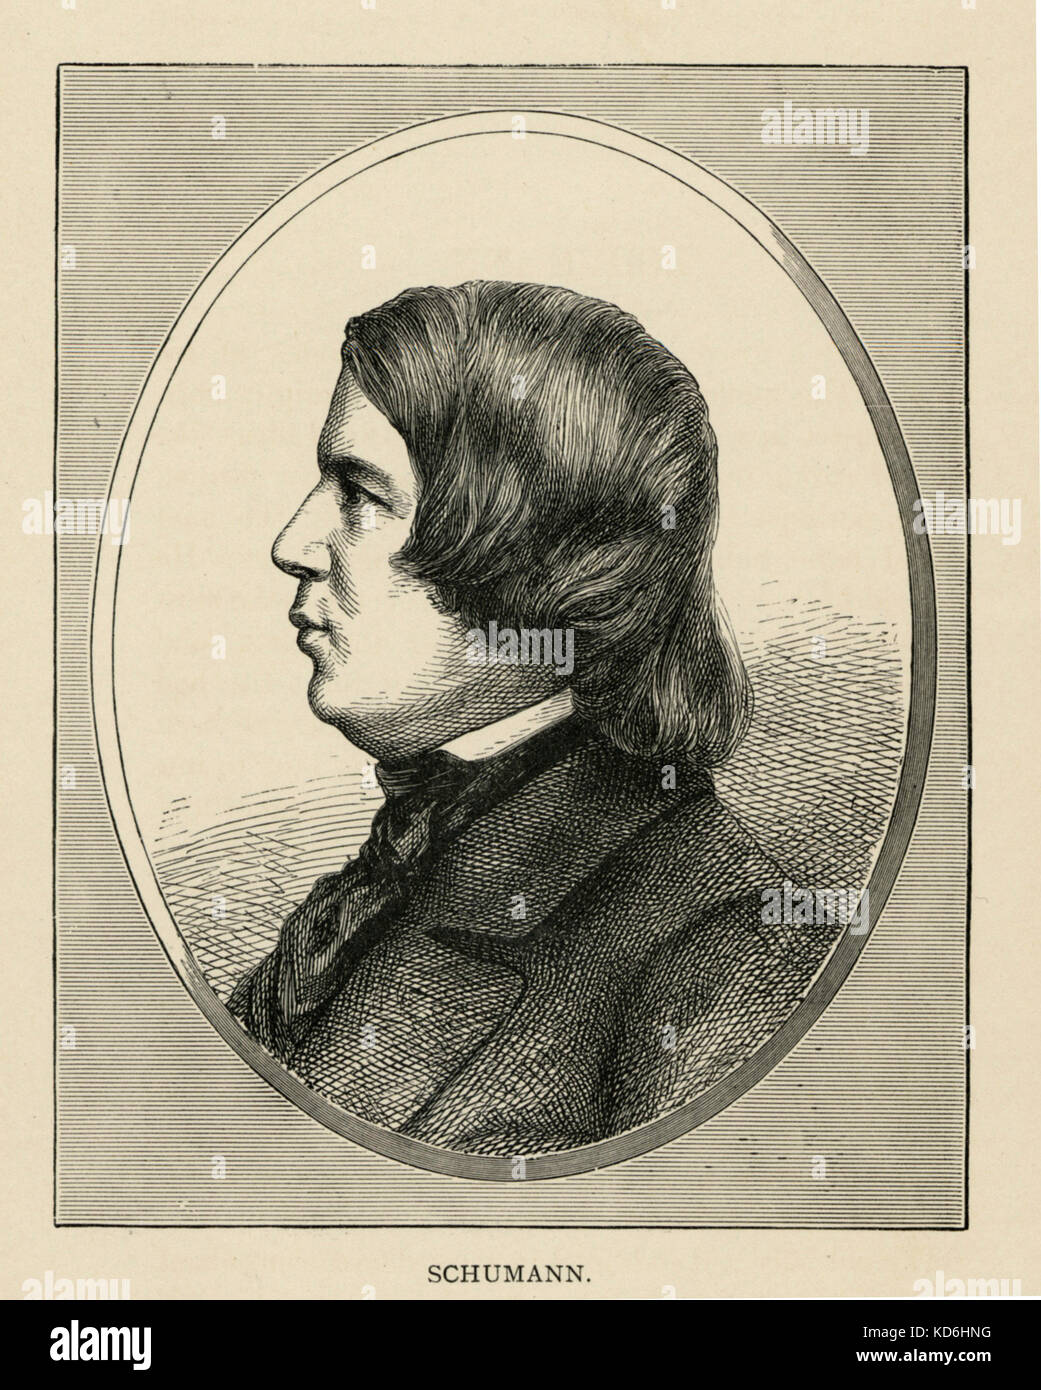 Robert Schumann, portrait de lui dans le profil. Compositeur allemand, 1810-1856 Banque D'Images